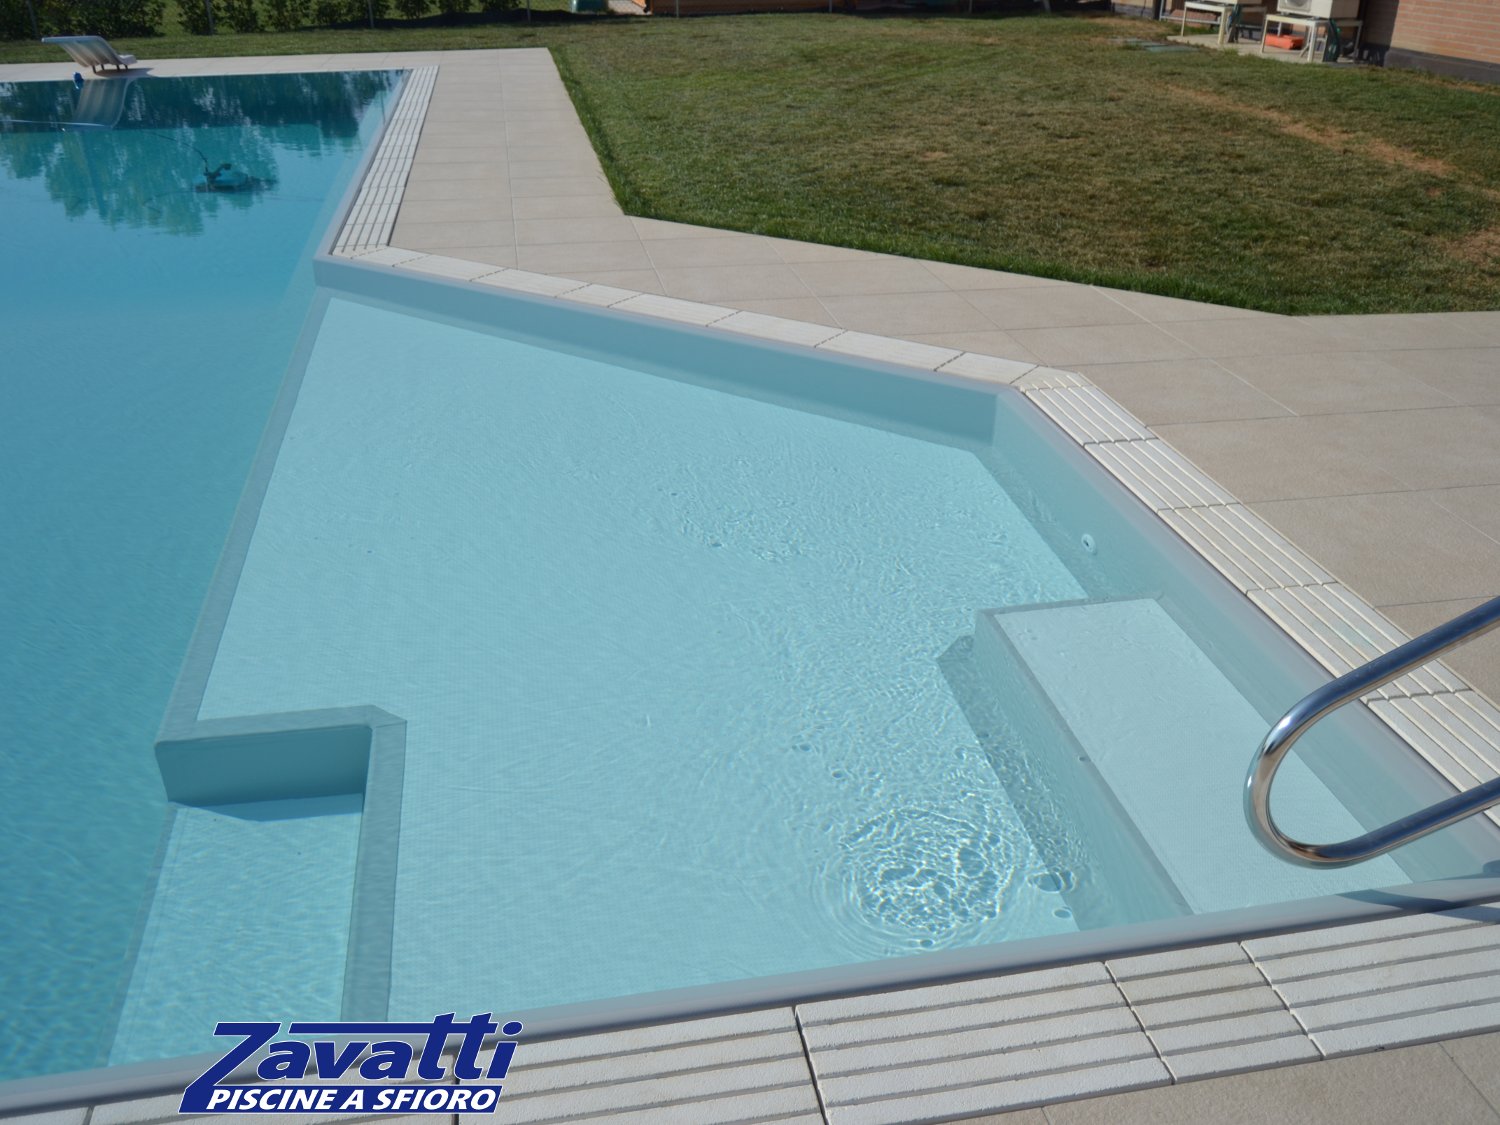 Zona relax piscina a sfioro realizzata con liner grigio. Particolare design dovuto alla forma della piscina e agli scalini bianchi